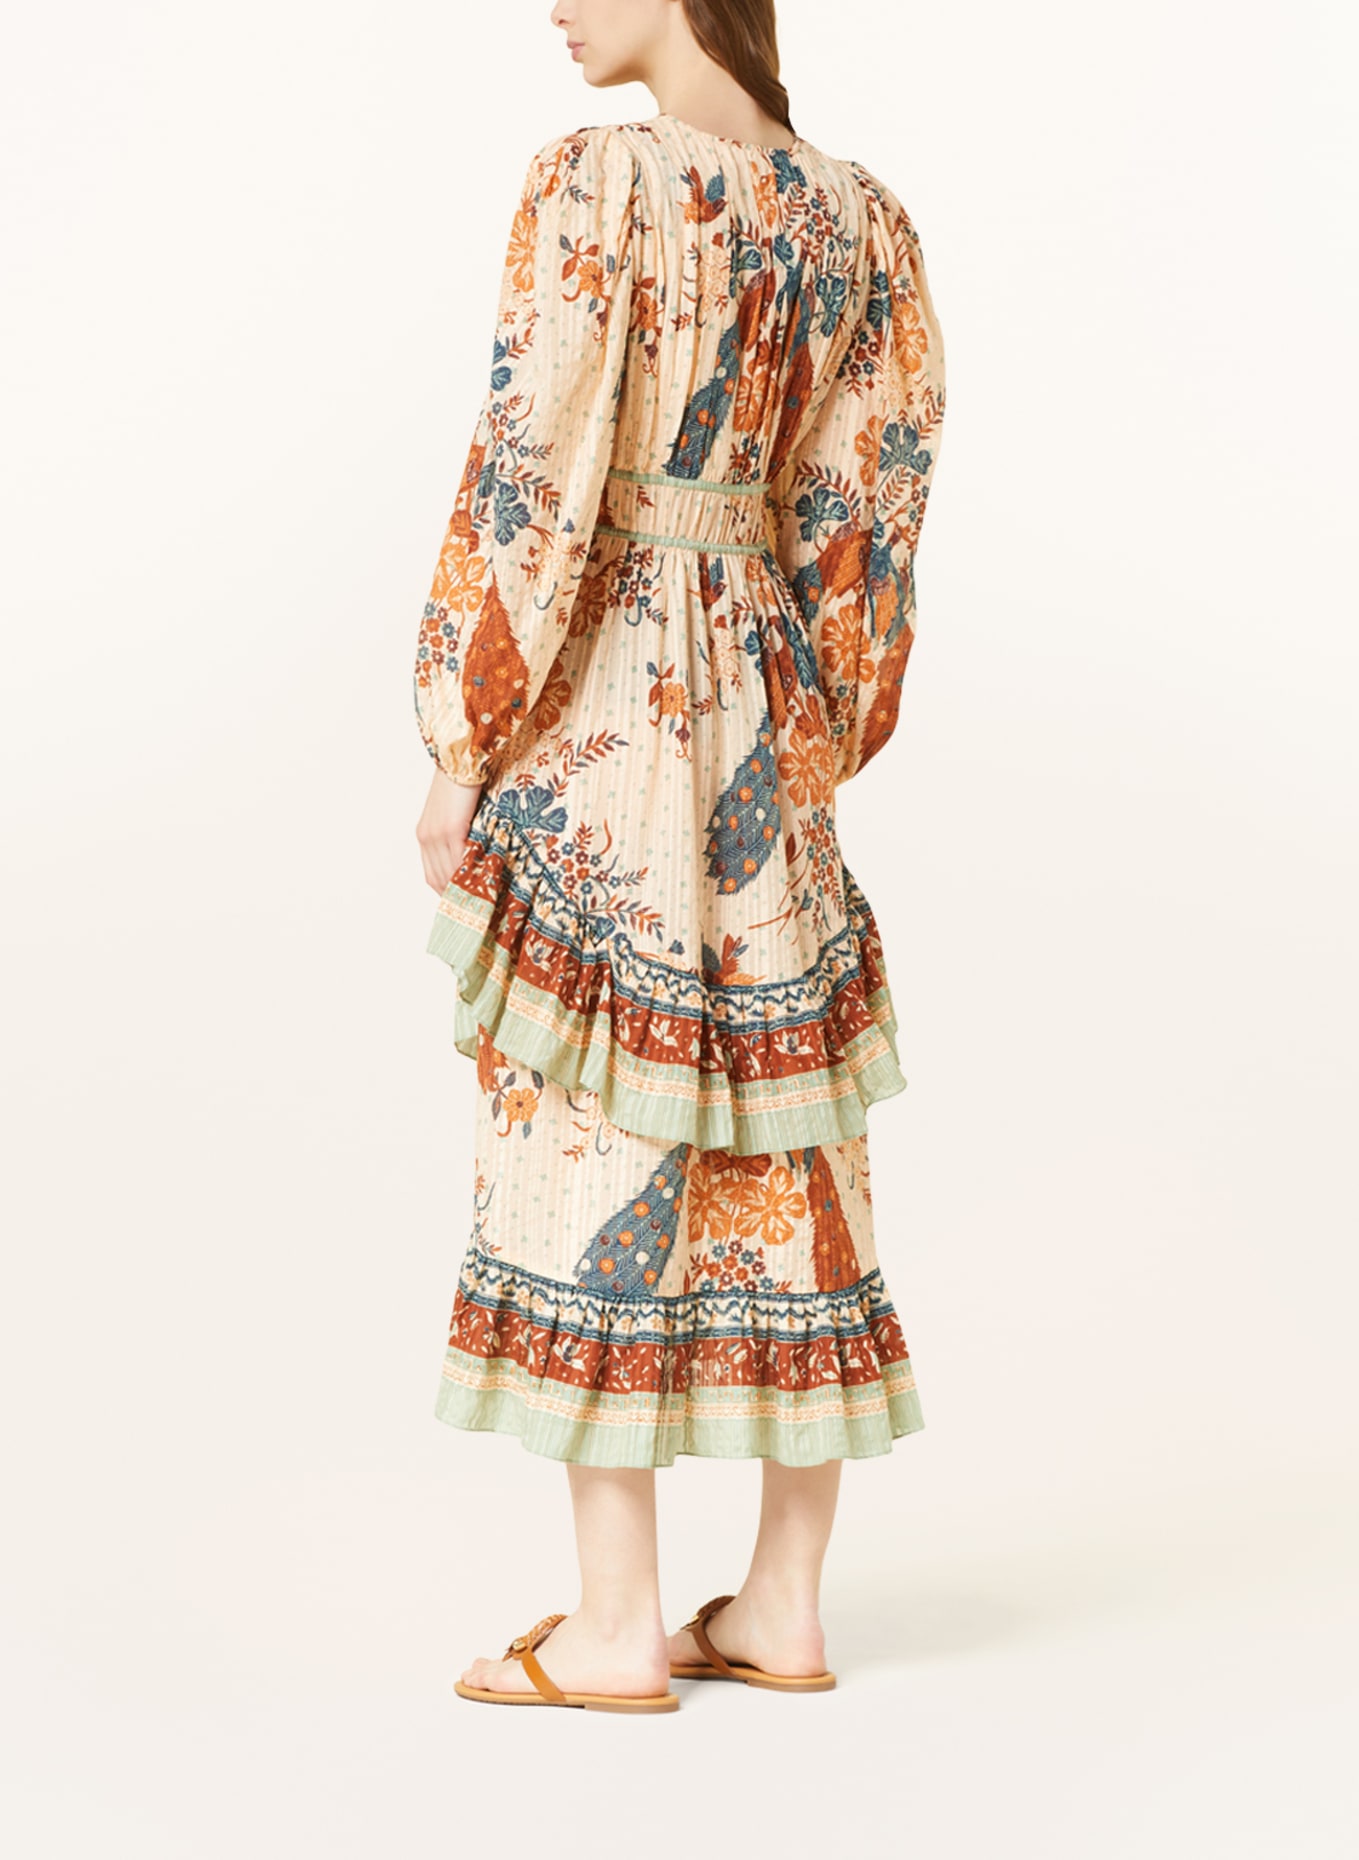 ULLA JOHNSON Kleid PORTIA mit Rüschen, Farbe: HELLORANGE/ BRAUN/ HELLGRÜN (Bild 3)